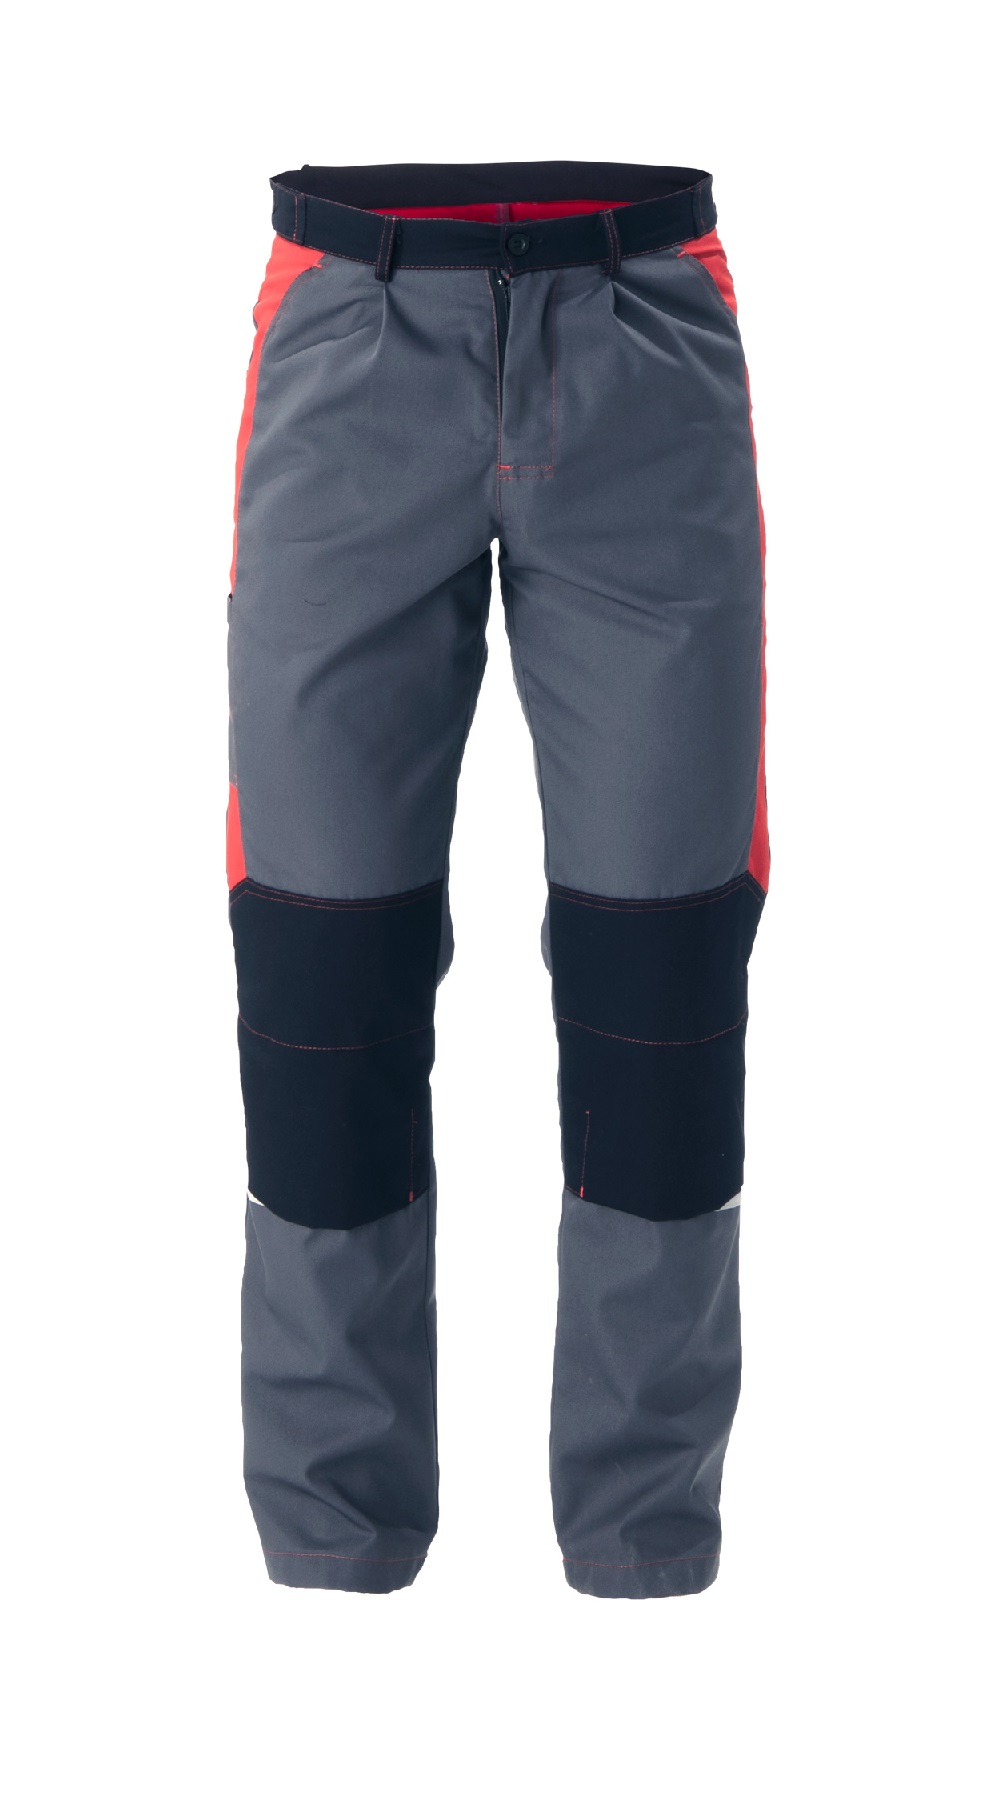 Летние брюки "СПЕЦ" мужские, цвет: серый с черным и красным, ткань: Томбой